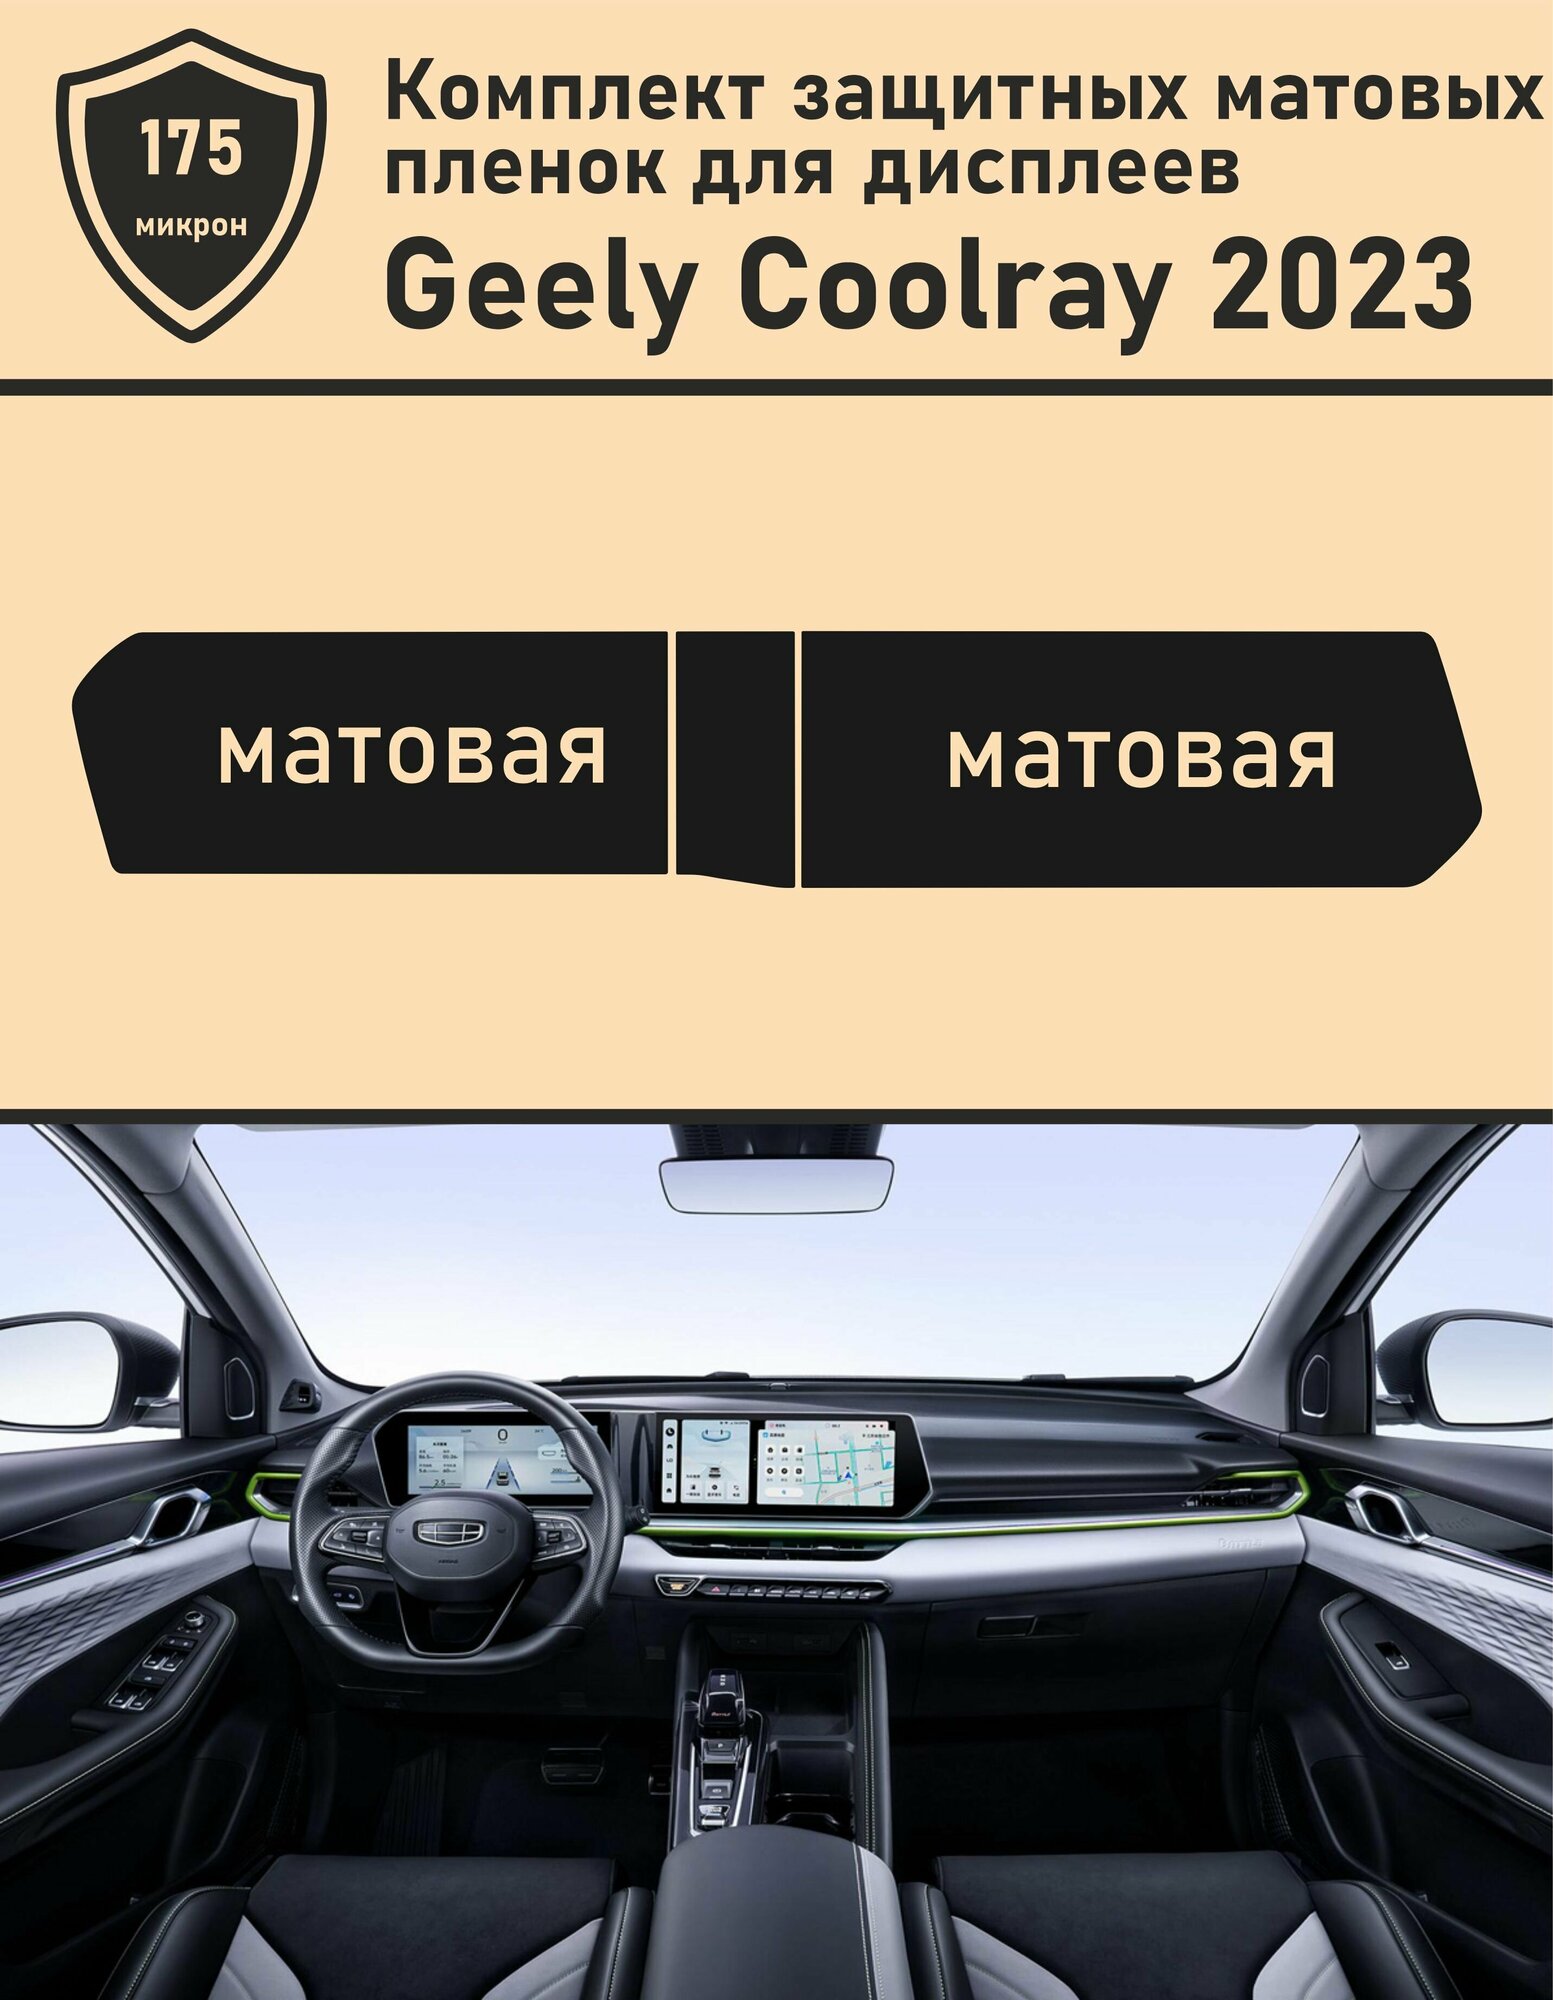 Geely Coolray 2023/Комплект защитных матовых пленок для дисплеев